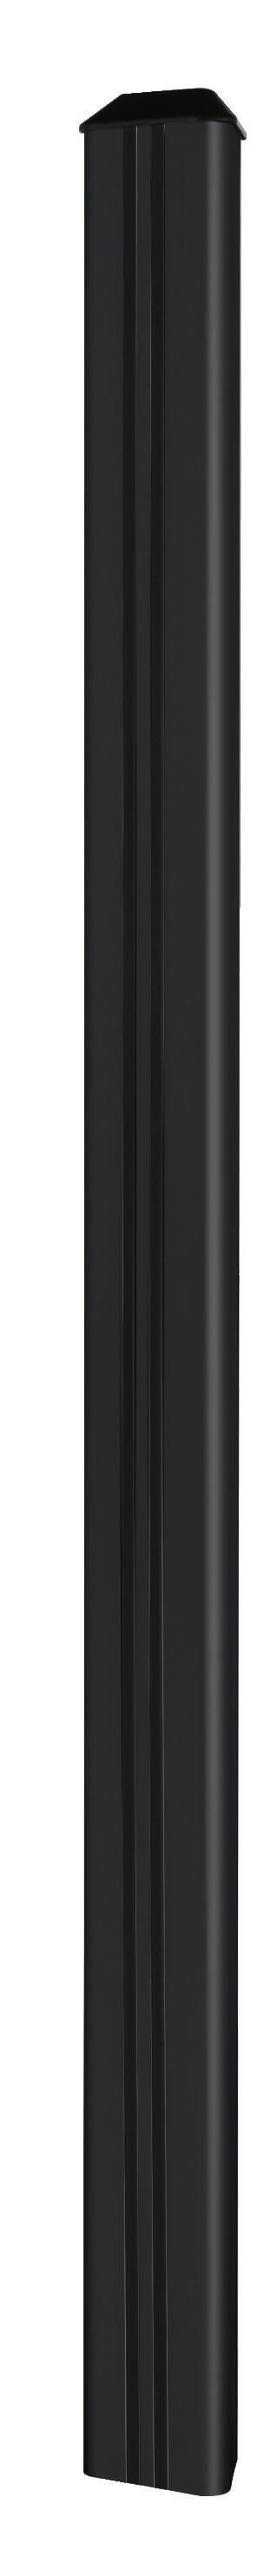 B-Tech Vertical Support Column, 1.8 m, Black - W126325125